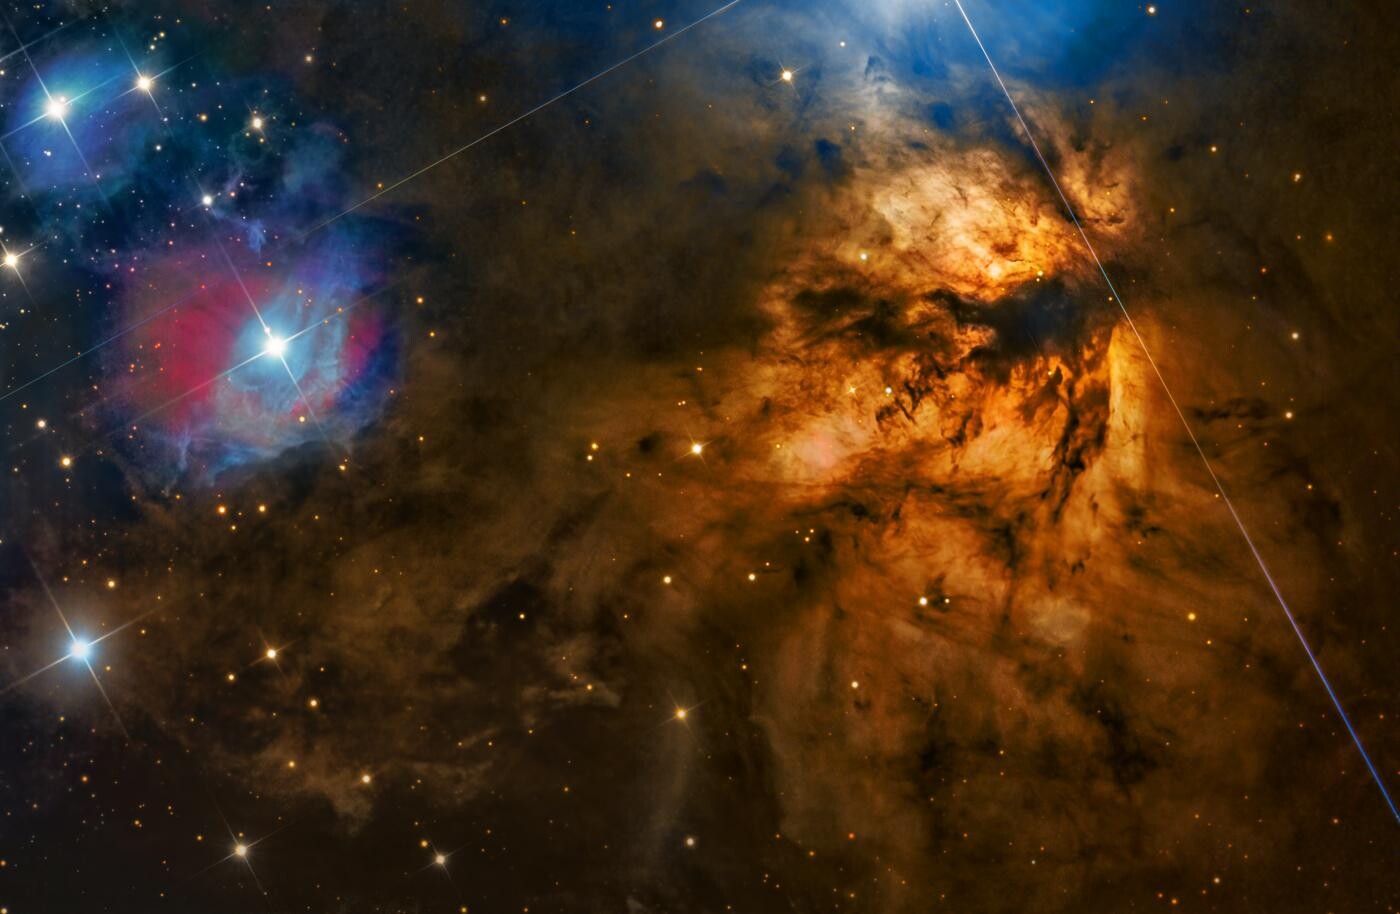 Финалист в категории Звёзды и туманности, 2021. Туманность Пламя (или Факел,  NGC 2024). Автор Стивен Мор